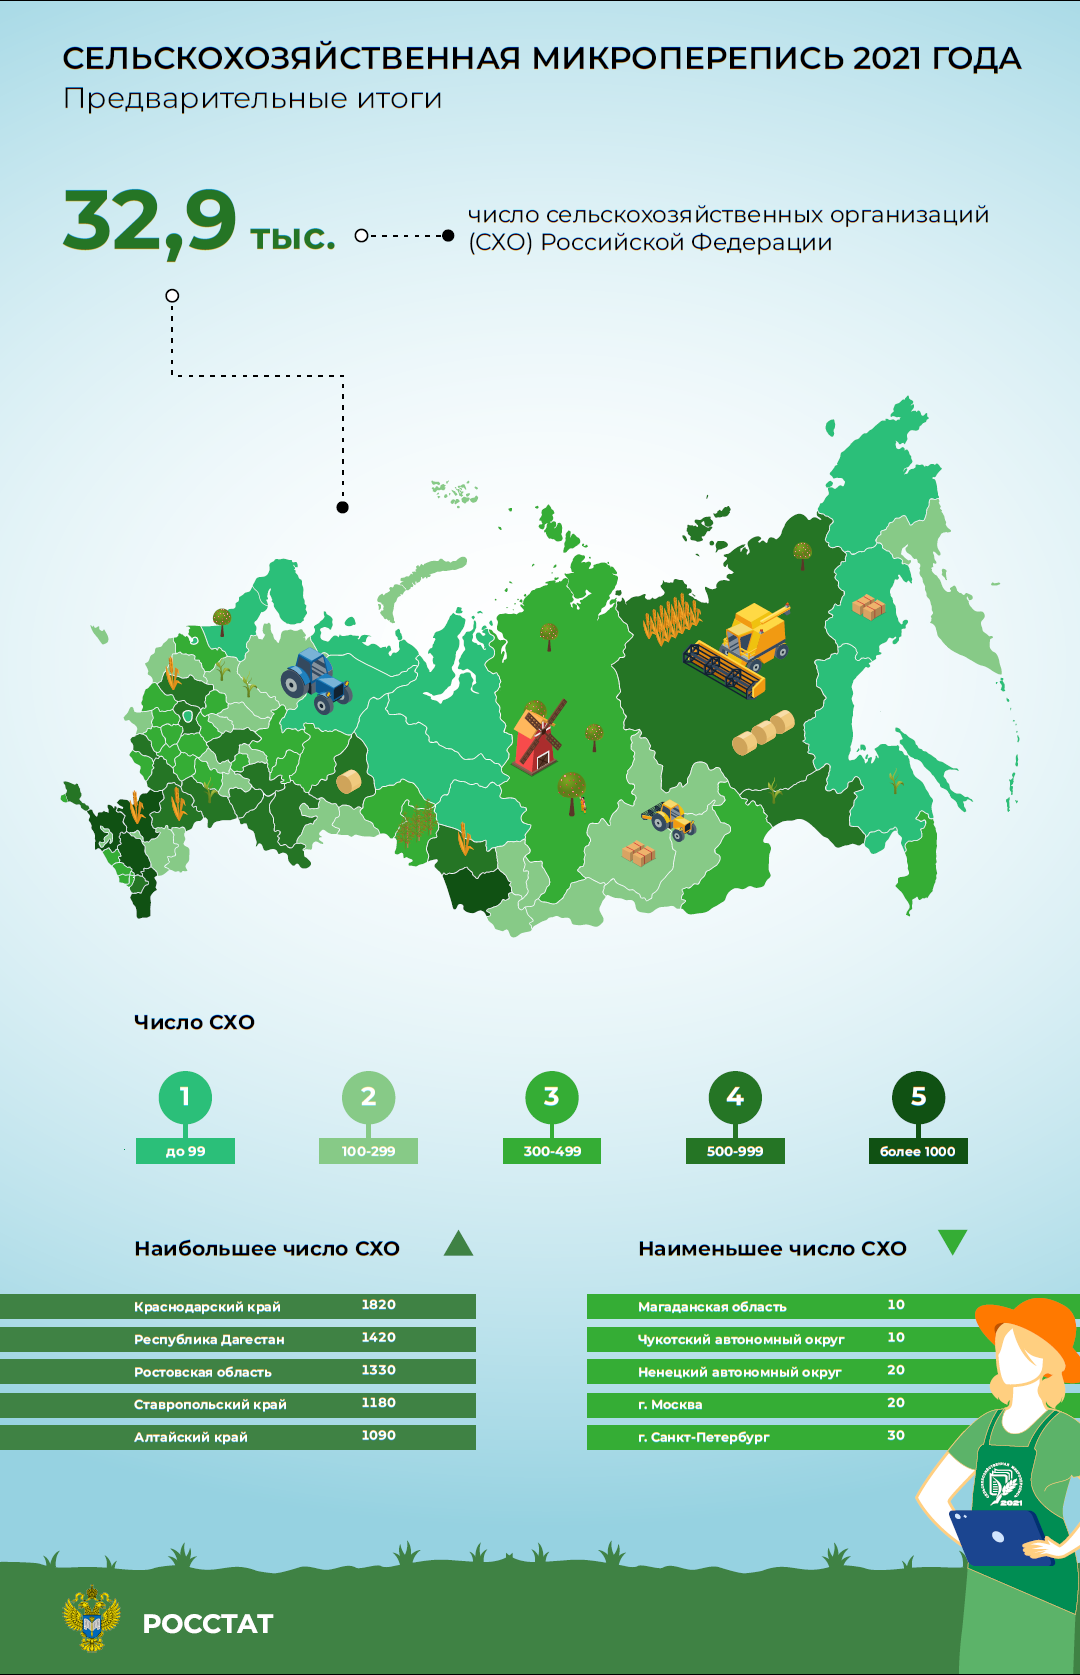 Ростовская область на третьем месте по числу сельхозорганизаций